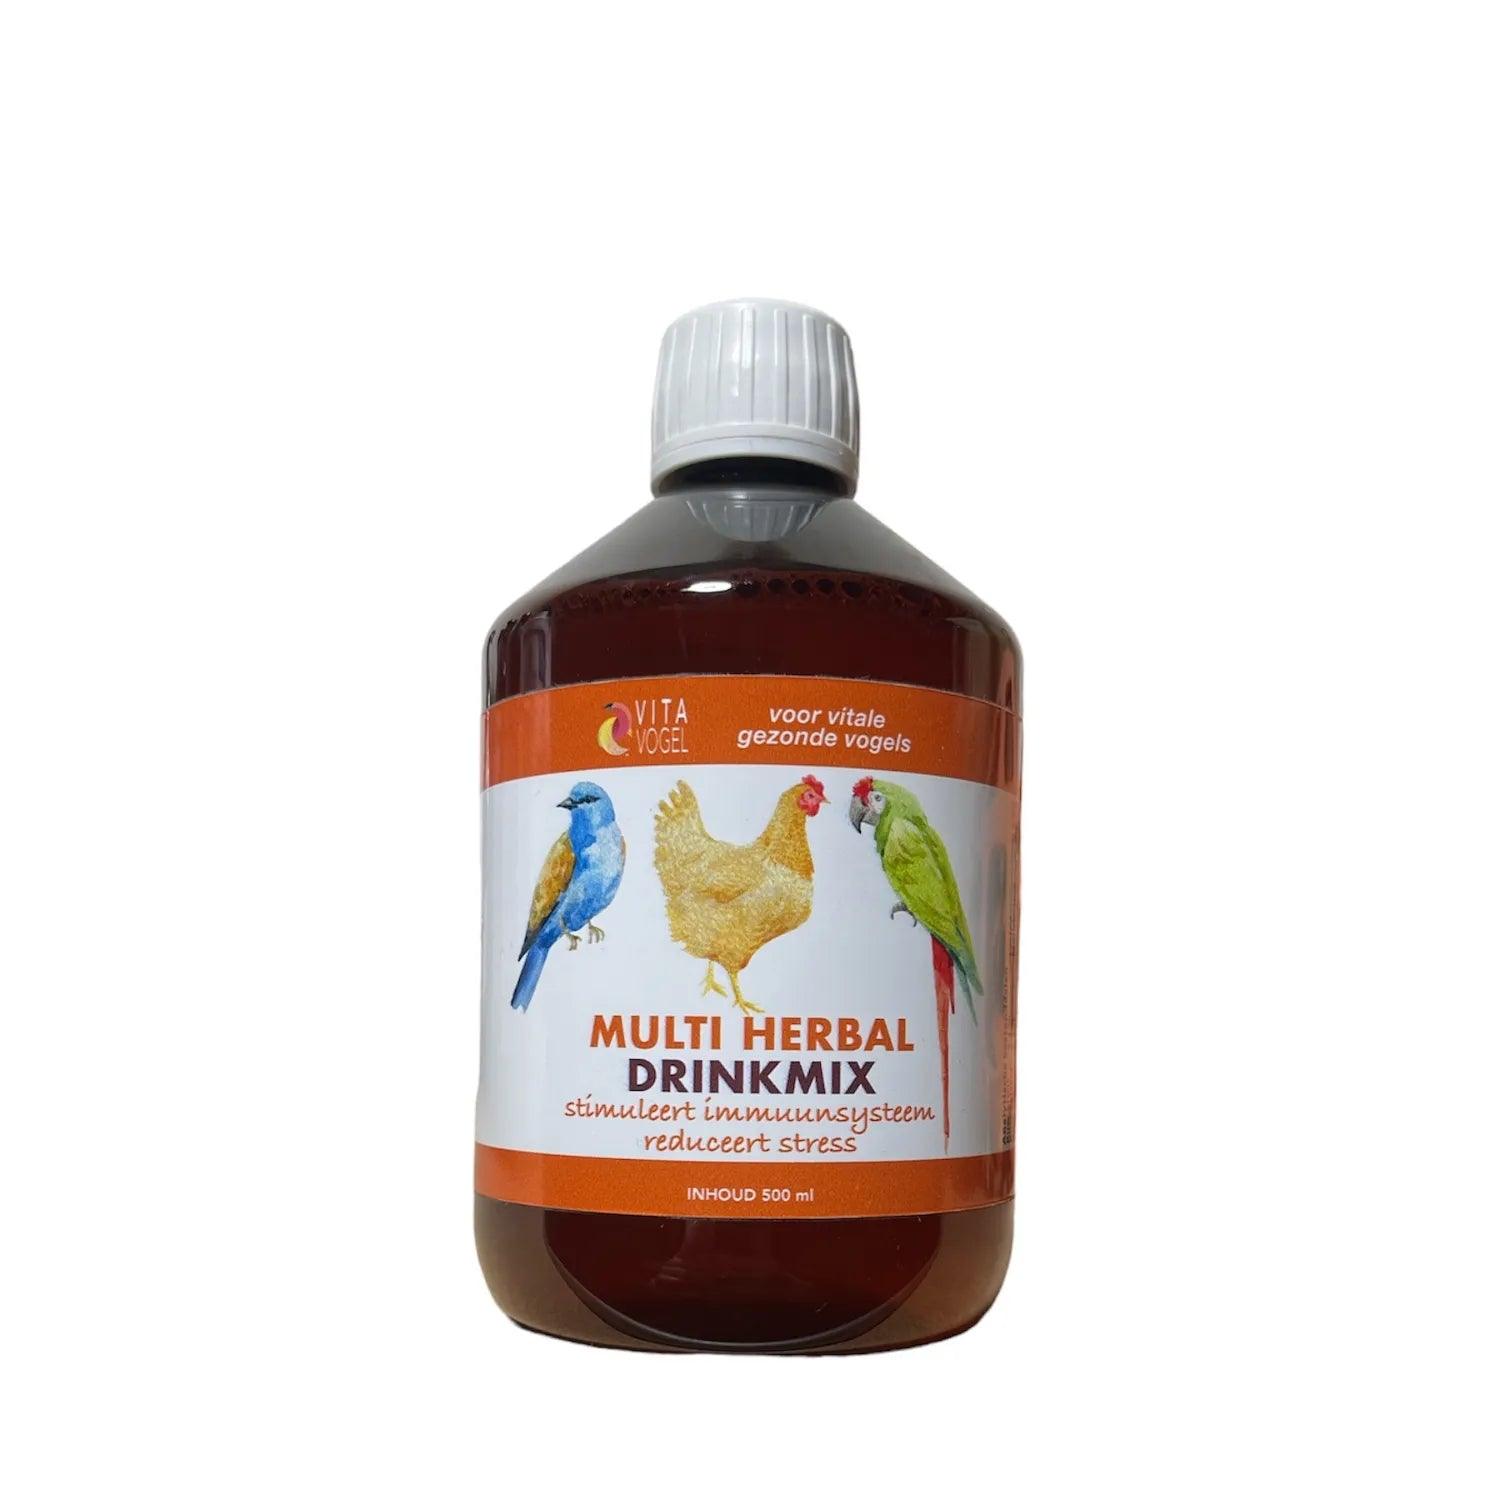 Multi Herbal Bloedluis Drinkmix - Vita Vogel , 100% natuurlijk, bloedluis, bloedluis bestrijden door het drinkwater, Bloedluis bestrijden kippen, bloedluisvrij, Kippenpakket.nl, makkelijk van bloedluis afkomen, Vita Vogel